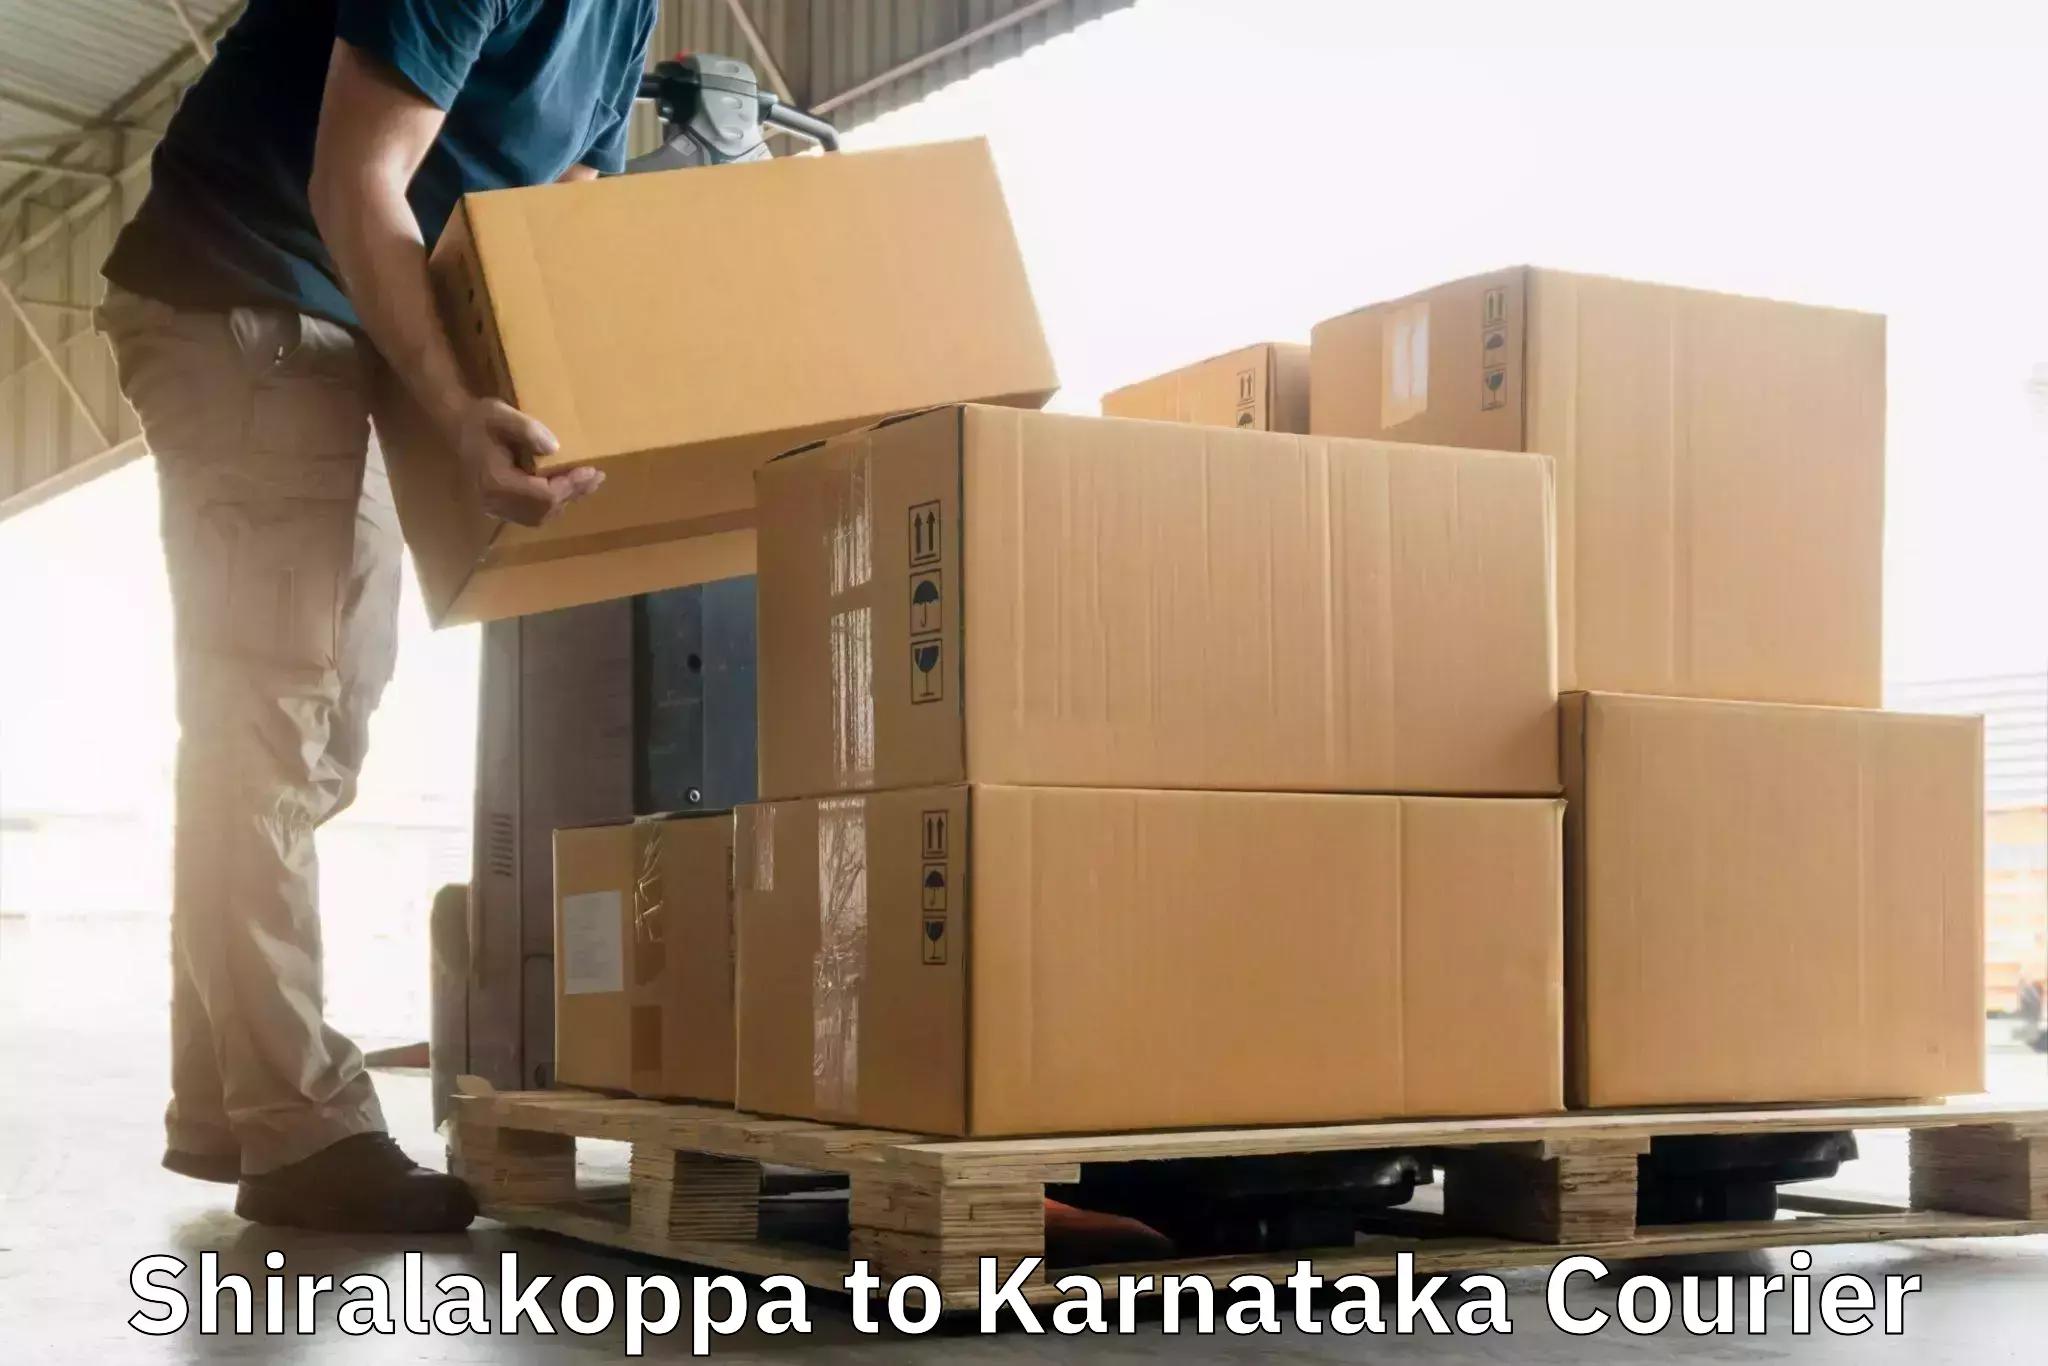 Global courier networks Shiralakoppa to Harohalli